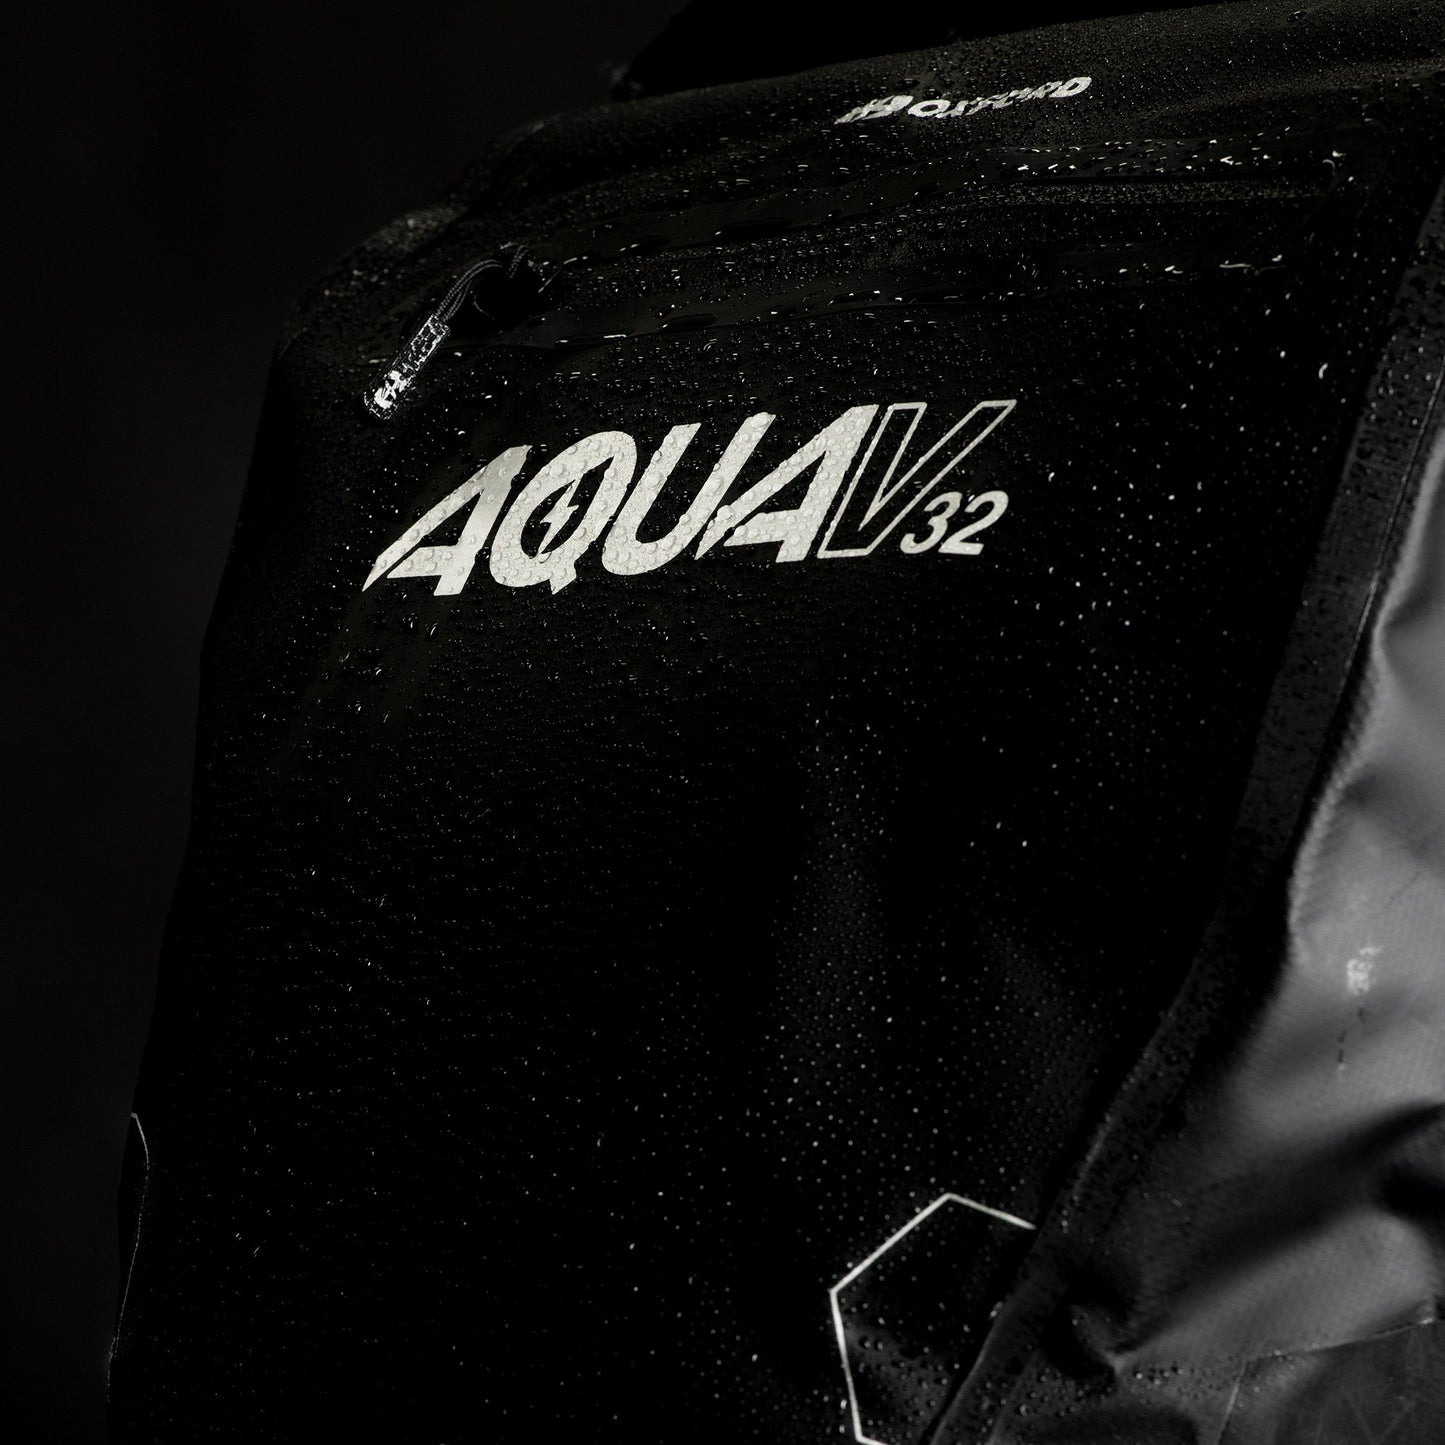 Aqua V 32 Double Pannier Bag